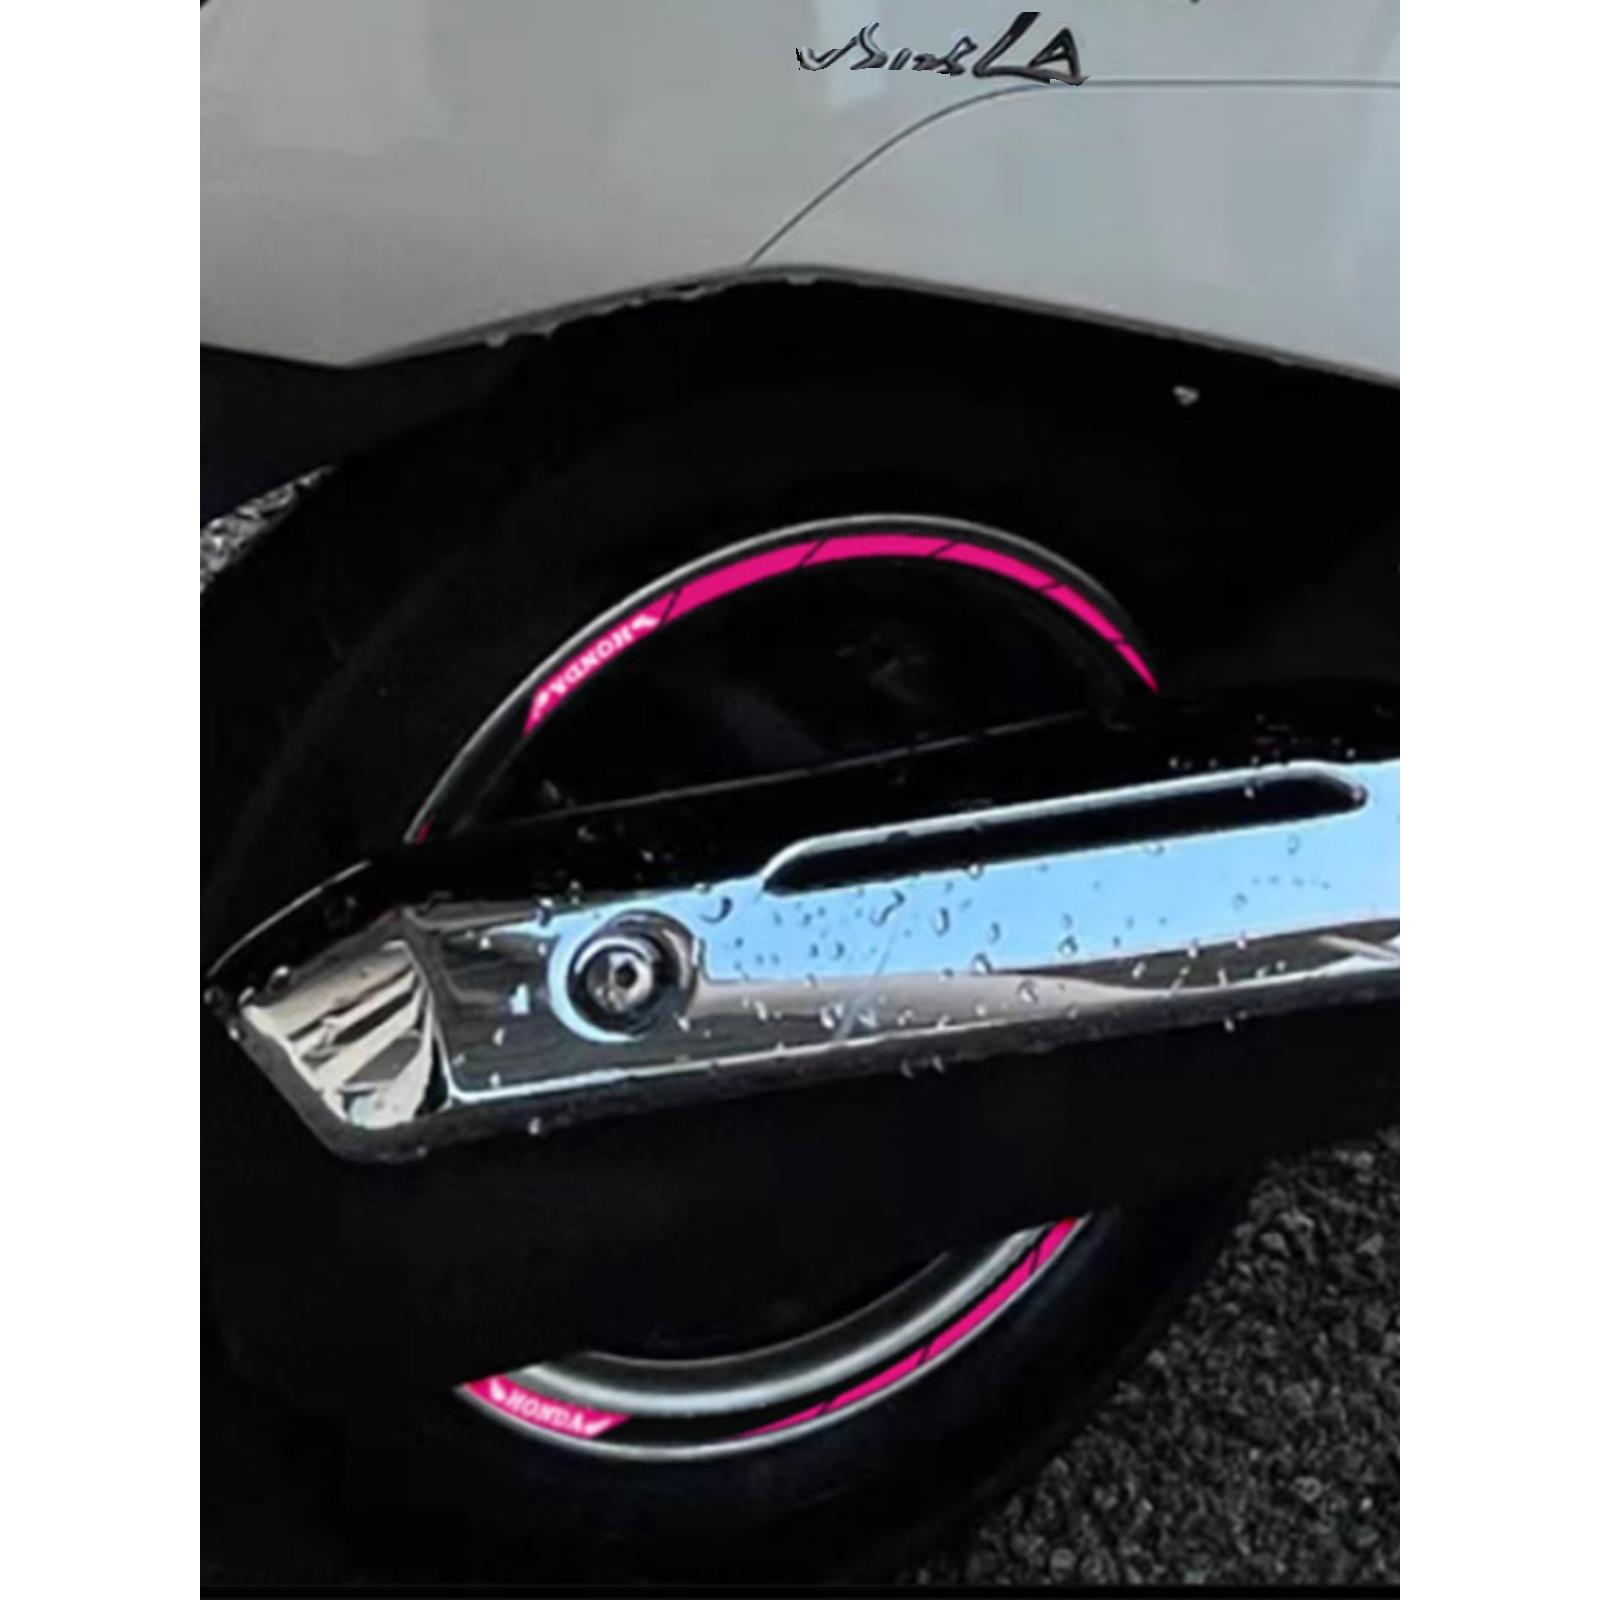 适用本田复古踏板摩托车NS125LA轮毂反光贴钢圈贴轮圈装饰车贴